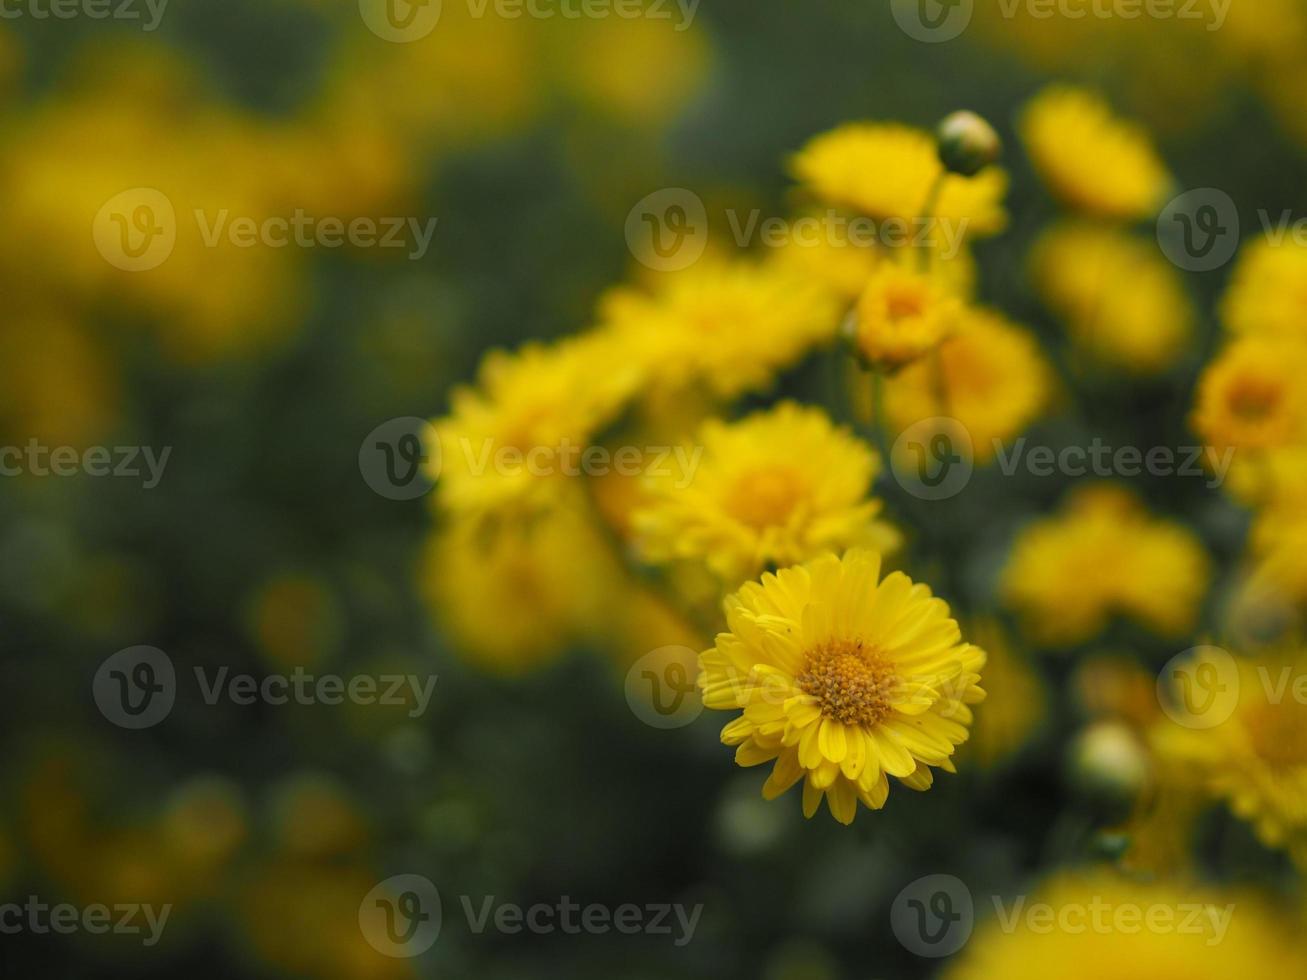 chrysantheme indicum wissenschaftlicher name dendranthema morifolium, flavonoide, nahaufnahmepollen der gelben blume, die im garten auf verschwommenem naturhintergrund blüht foto